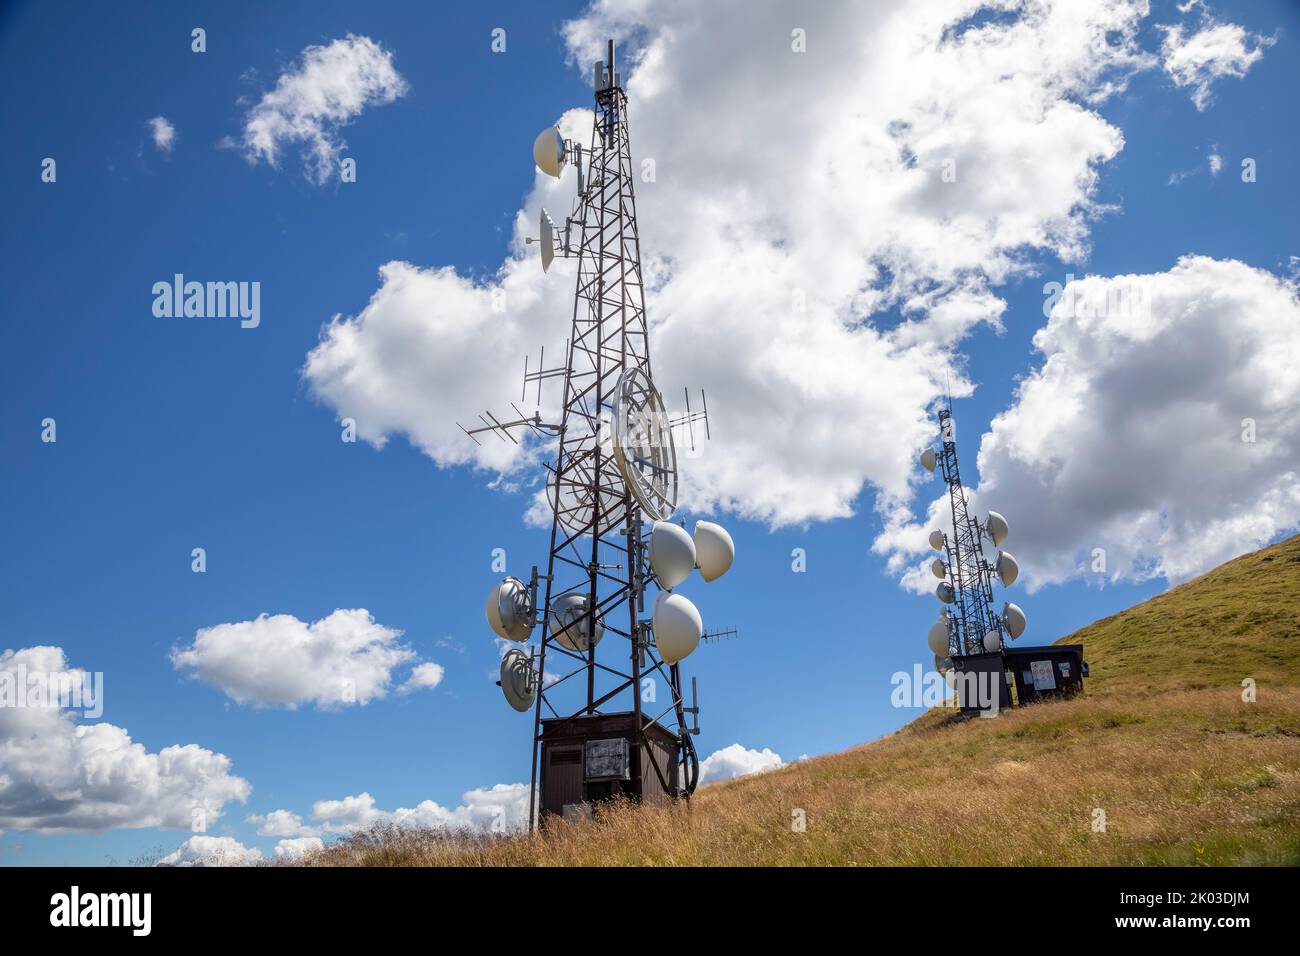 Italia, Trentino, provincia di Trento, Predazzo, Dos Capel. torre con antenne e parabole per radio e telecomunicazioni Foto Stock